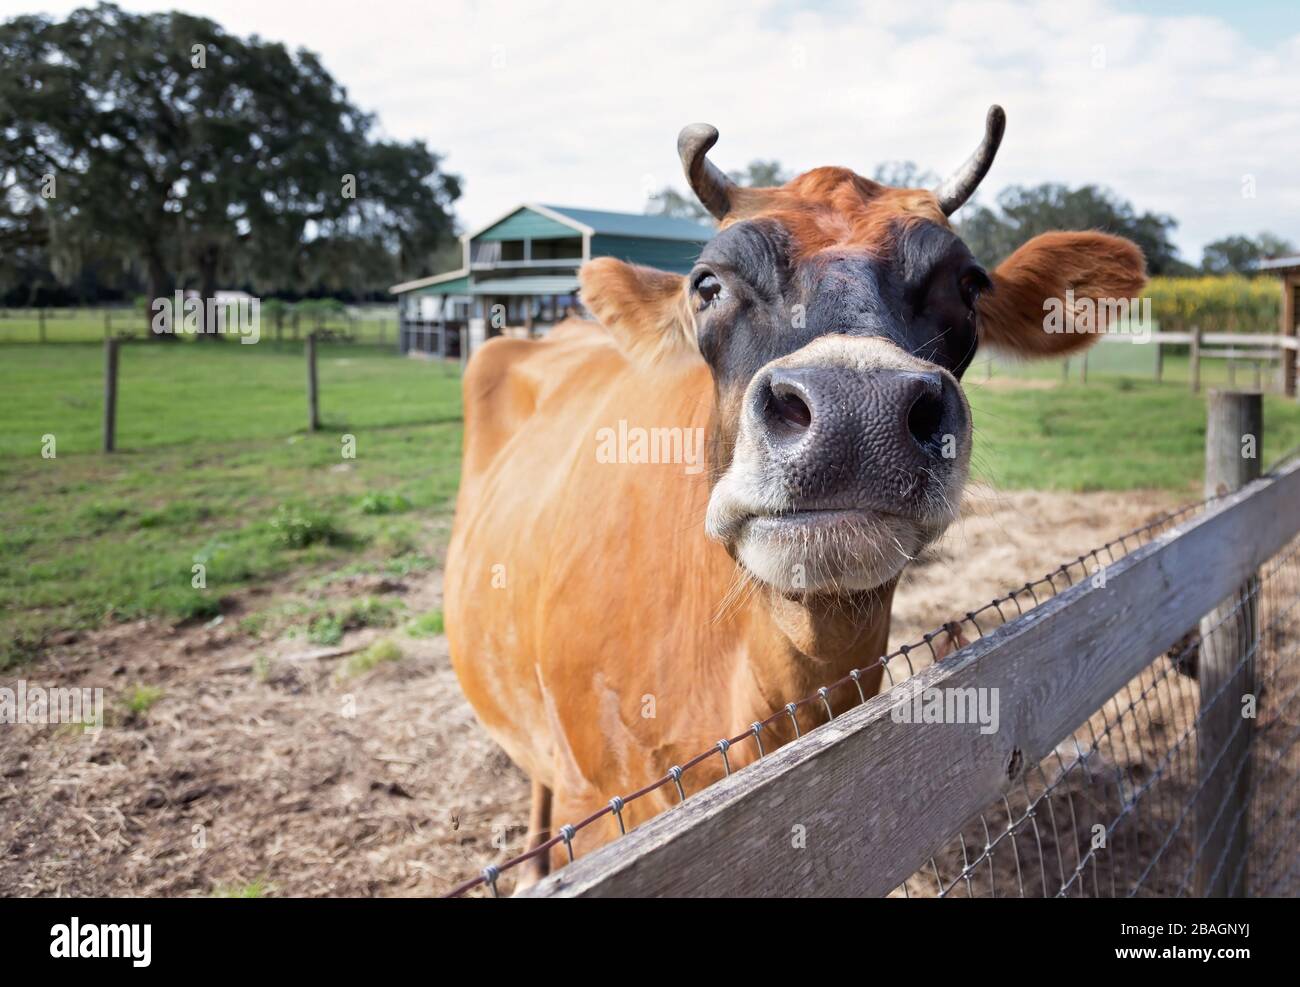 Cerca de vaca marrón con cuernos en la granja al lado de la valla, el granero en la parte de atrás Foto de stock